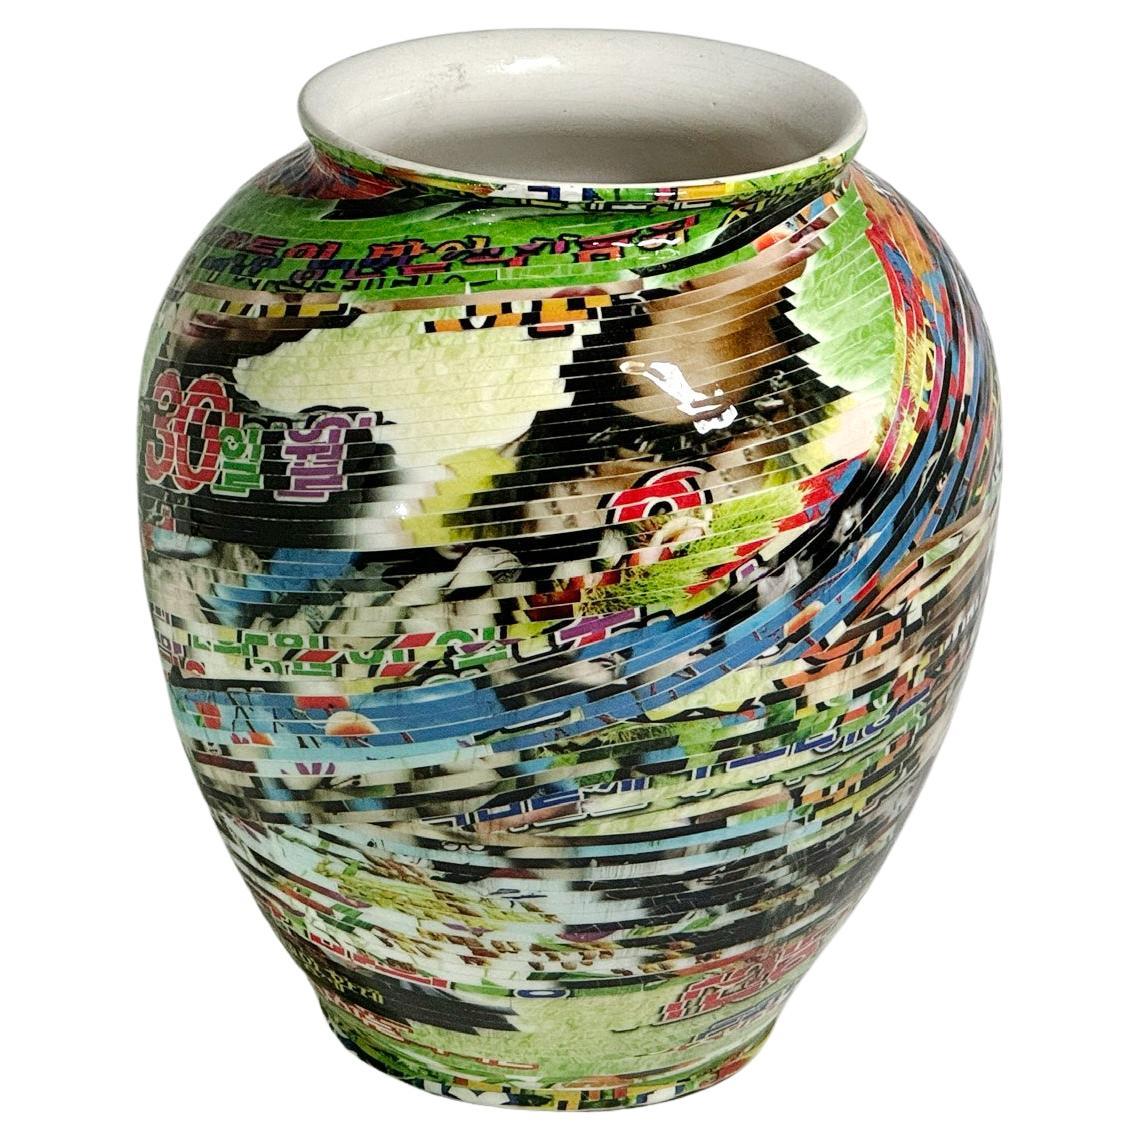 Jjirasi Vase #01. From the series Jjirasi 